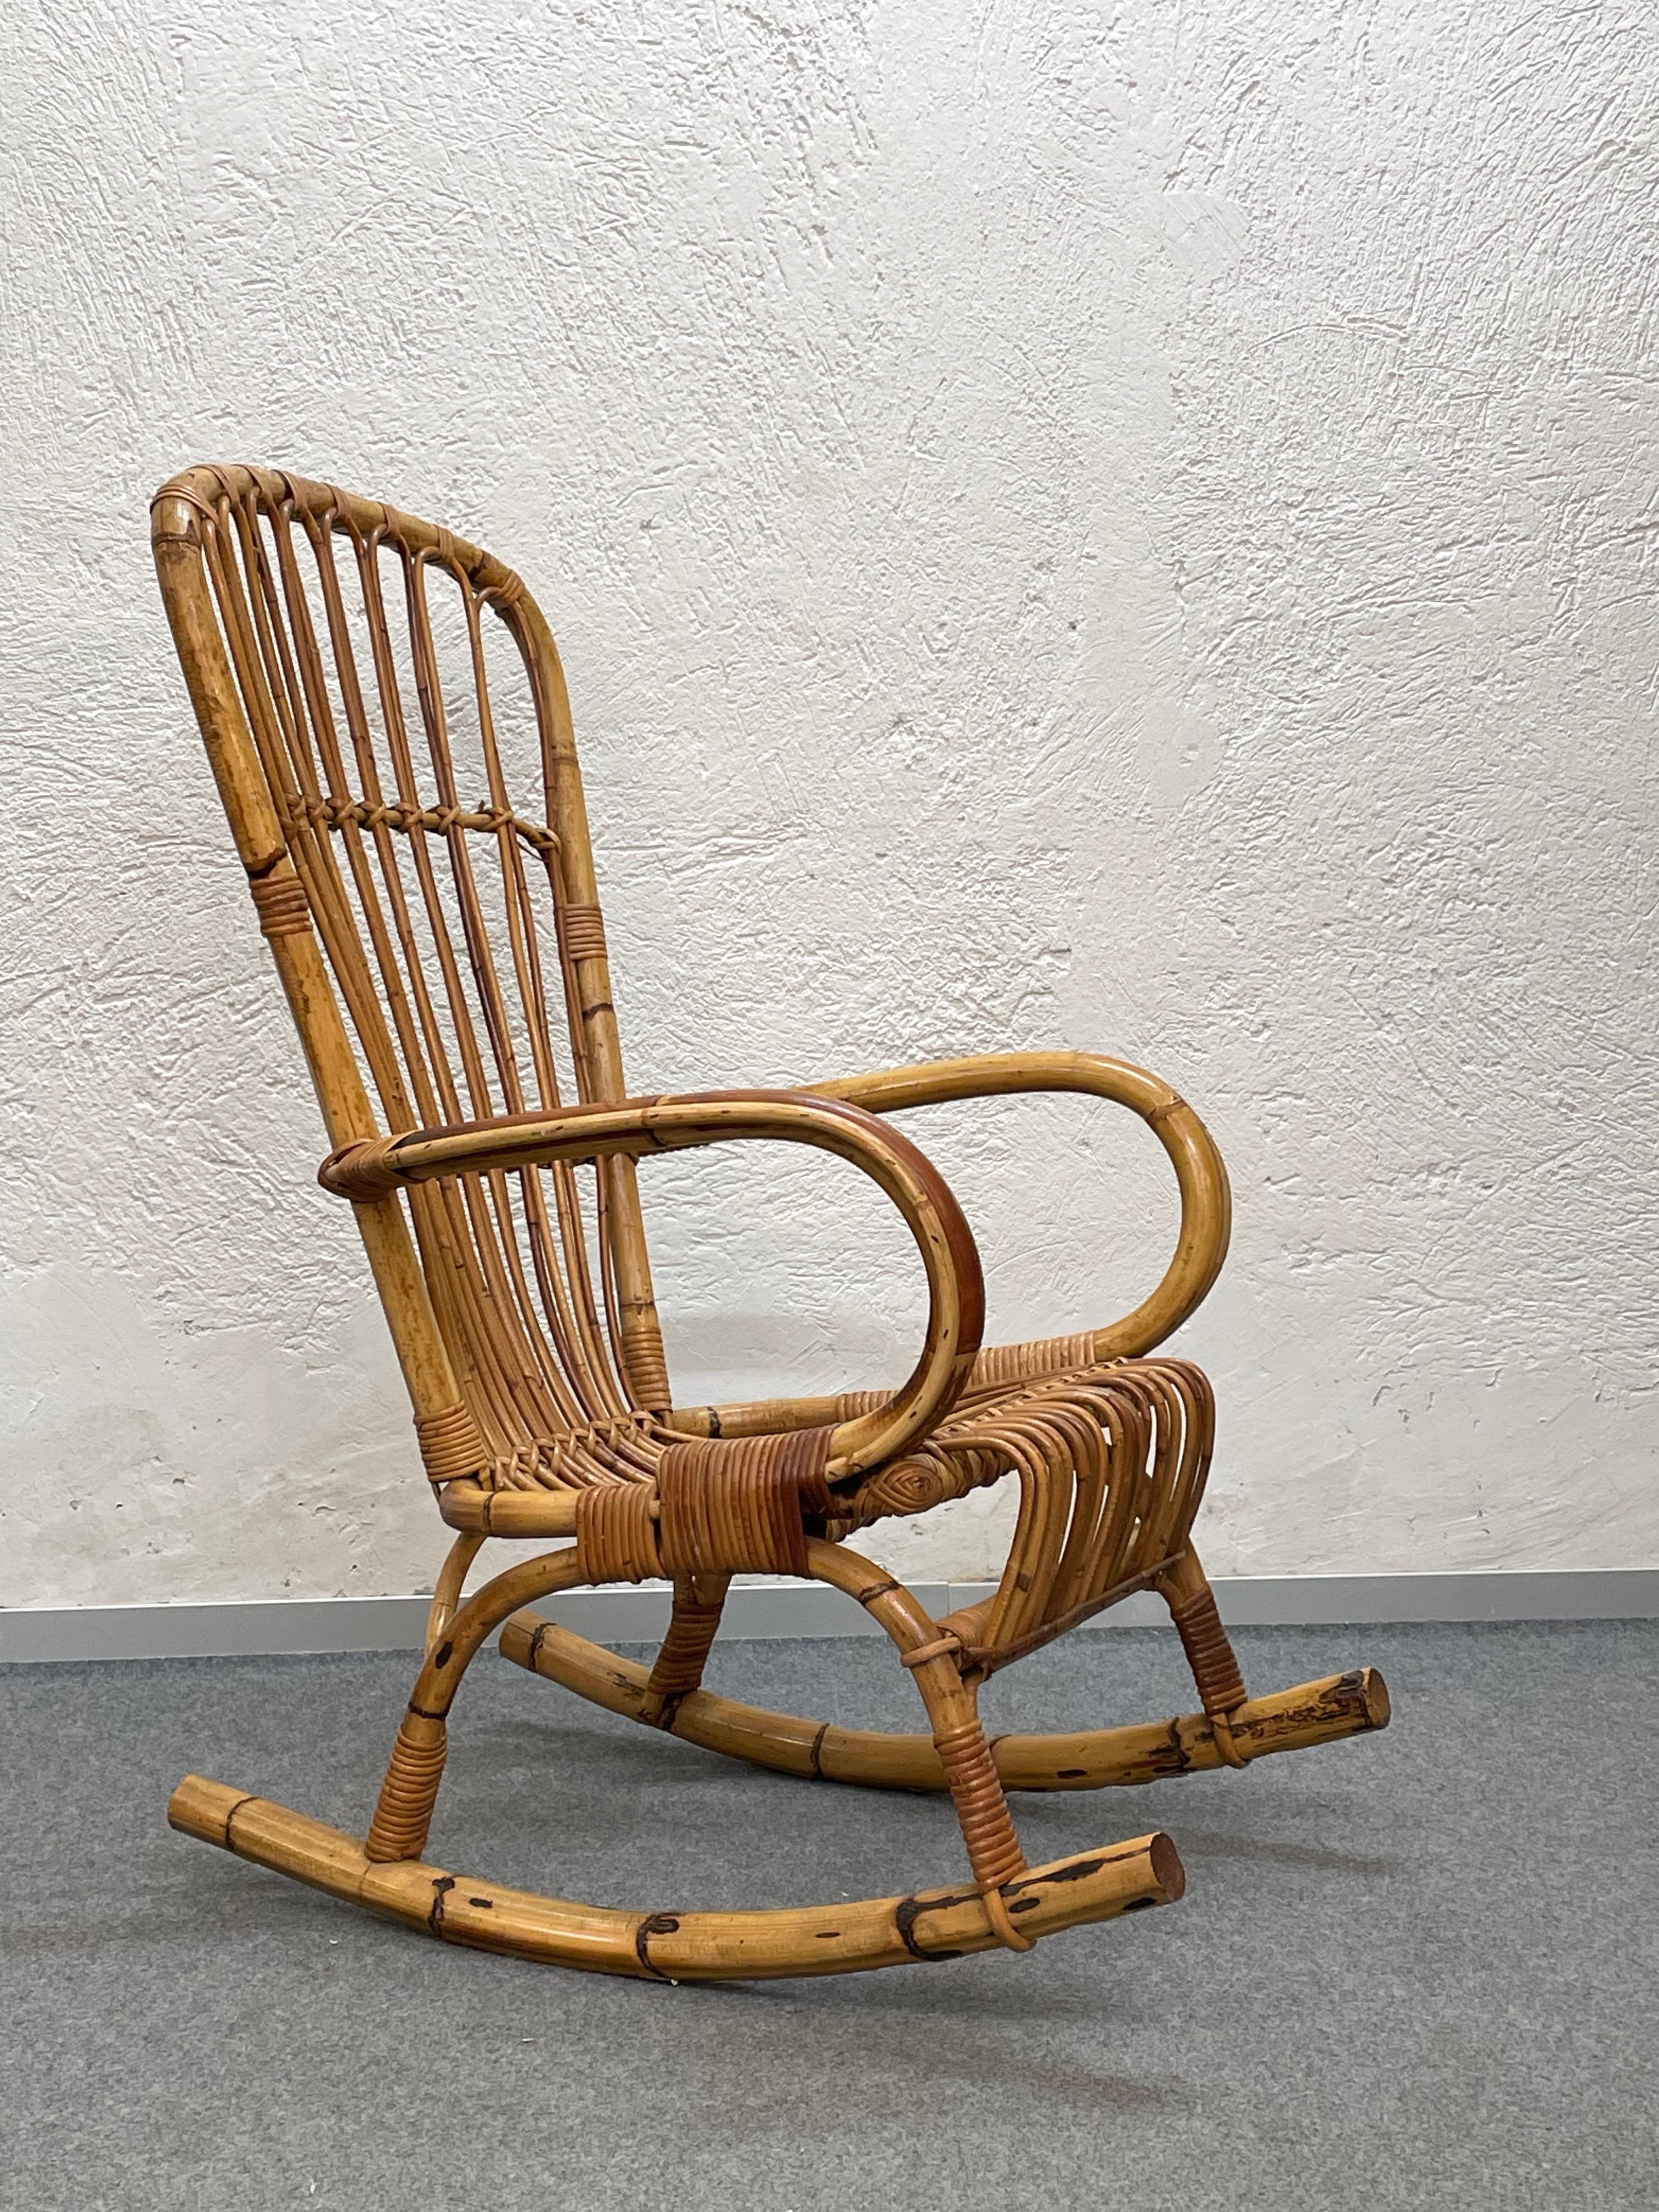 Elegant fauteuil à bascule en rotin, bambou et osier tressé à la main de la Côte d'Azur du milieu du siècle. Cette pièce fantastique a été conçue et fabriquée en Italie dans les années 1960.

Ce fauteuil a une belle structure en bambou courbé,